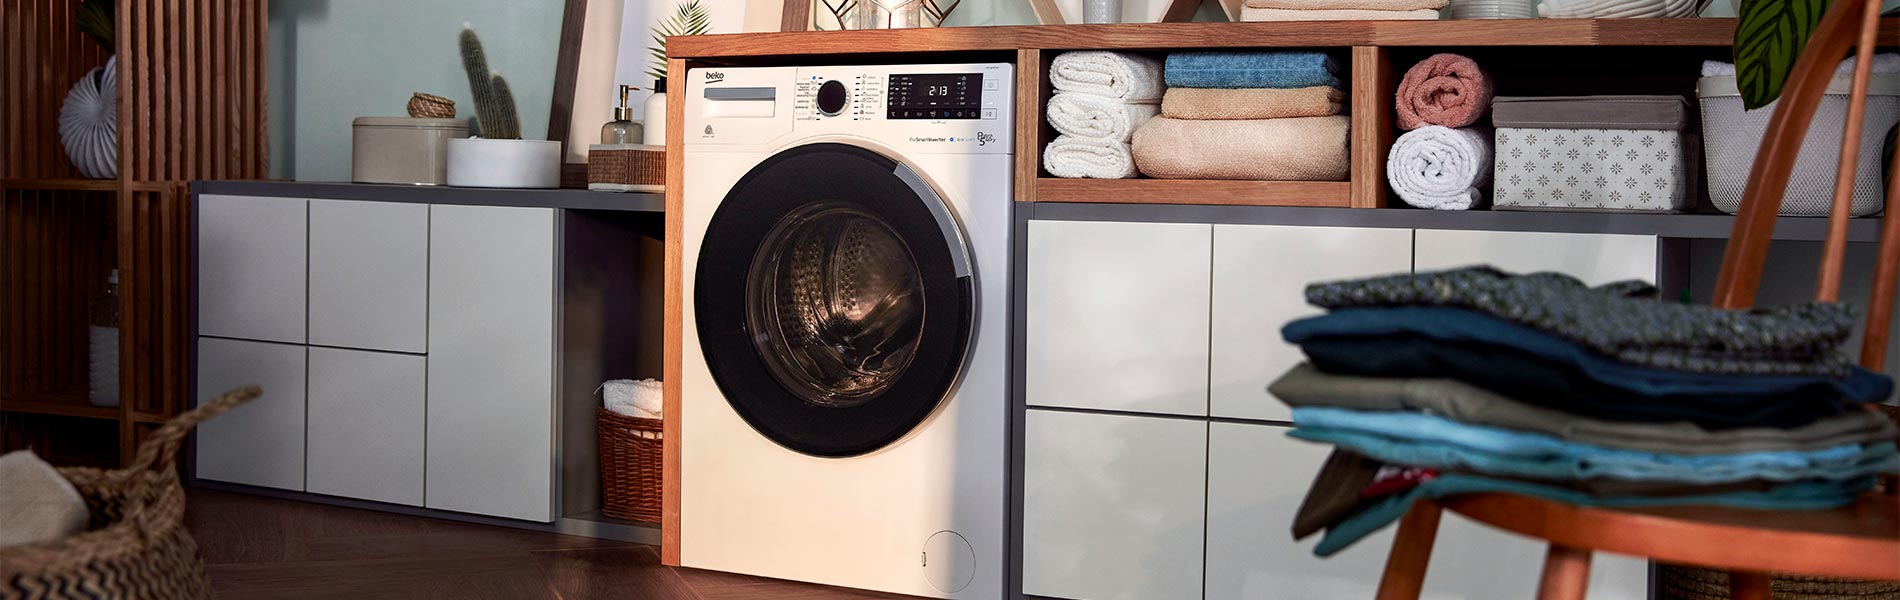 Programas de lavadora: cómo conseguir un lavado eficiente